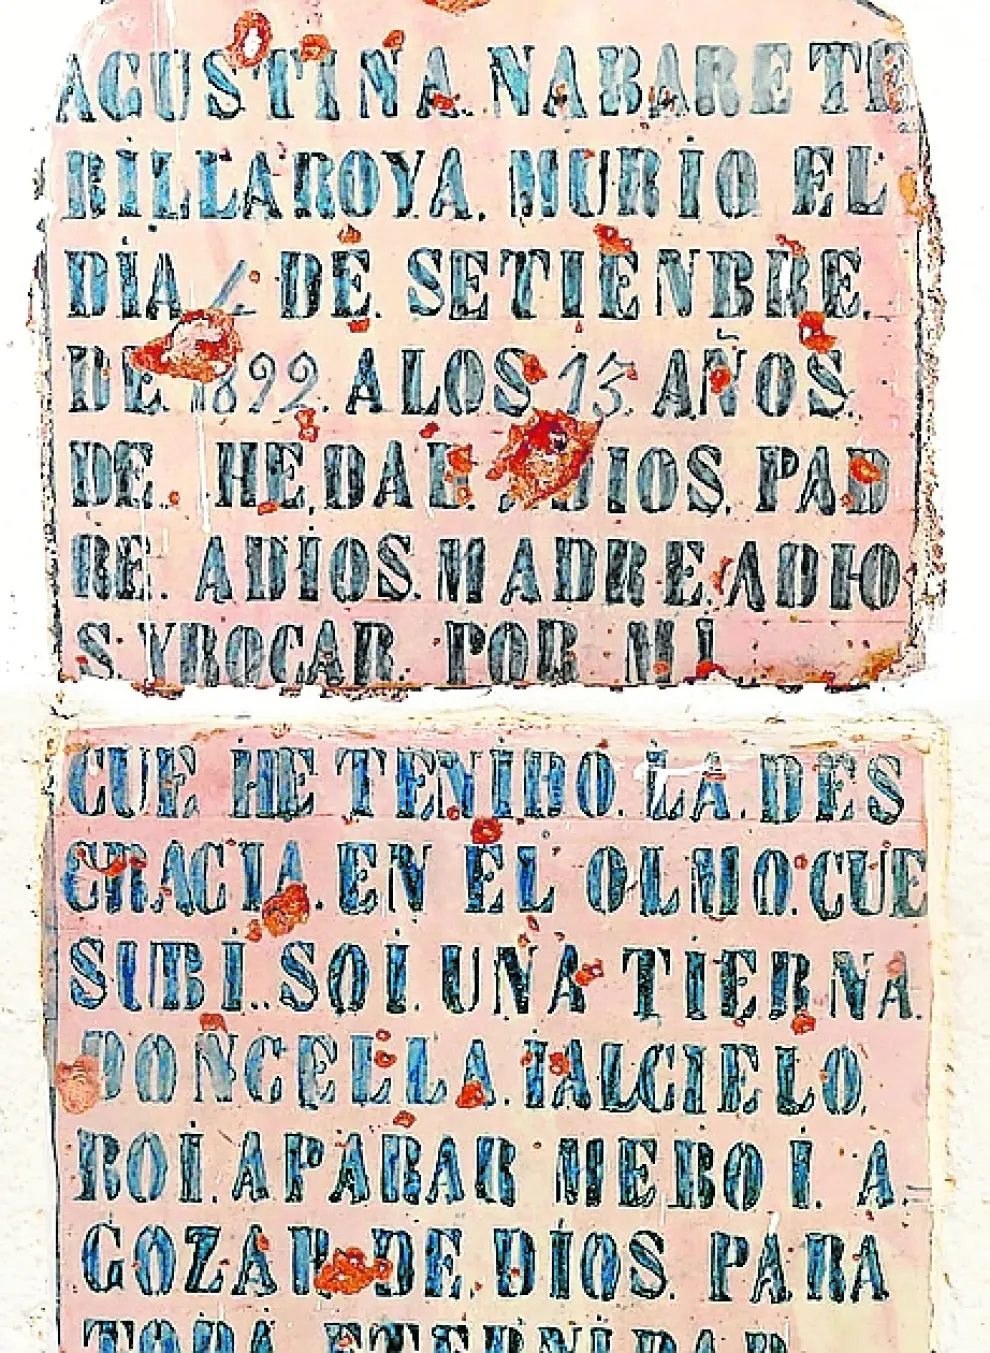 Tumba infantin en San Blas. Pieza dedicada al recuerdo de una 'tierna doncella' de 13 años fallecida en un accidente en 1892.